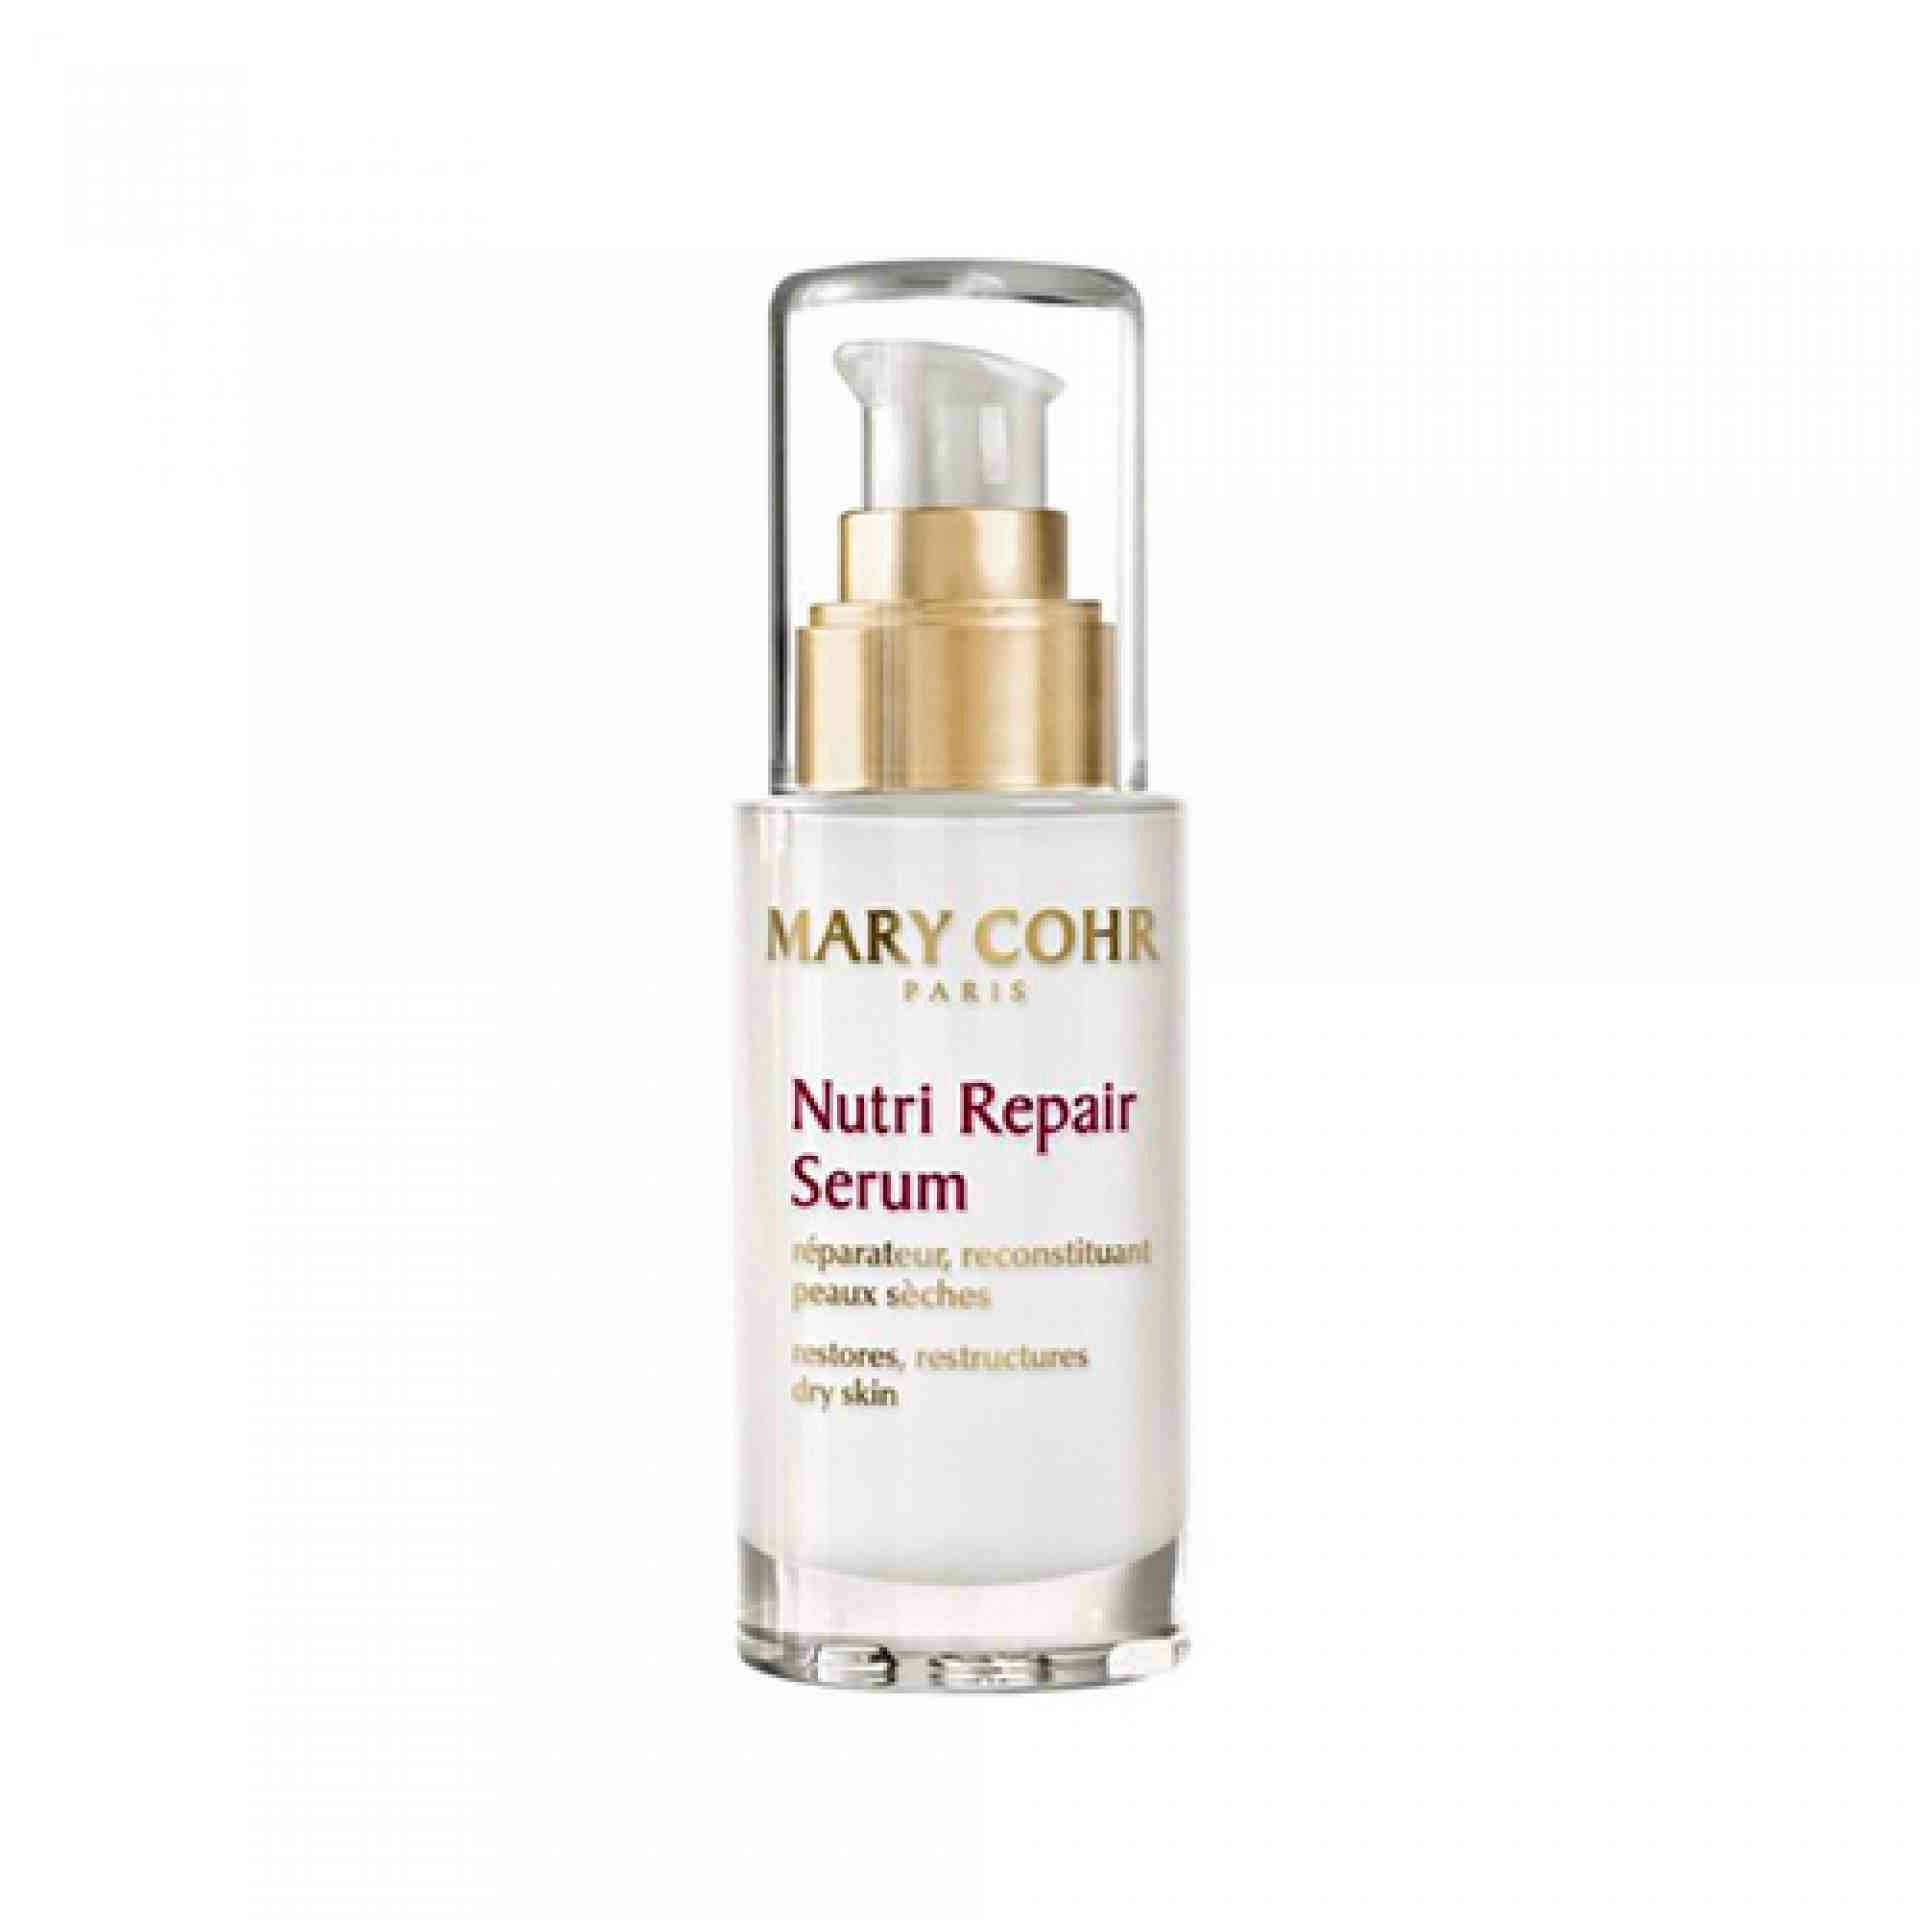 Nutri Repair Serum I Serum Reparador 30ml - Mary Cohr ®